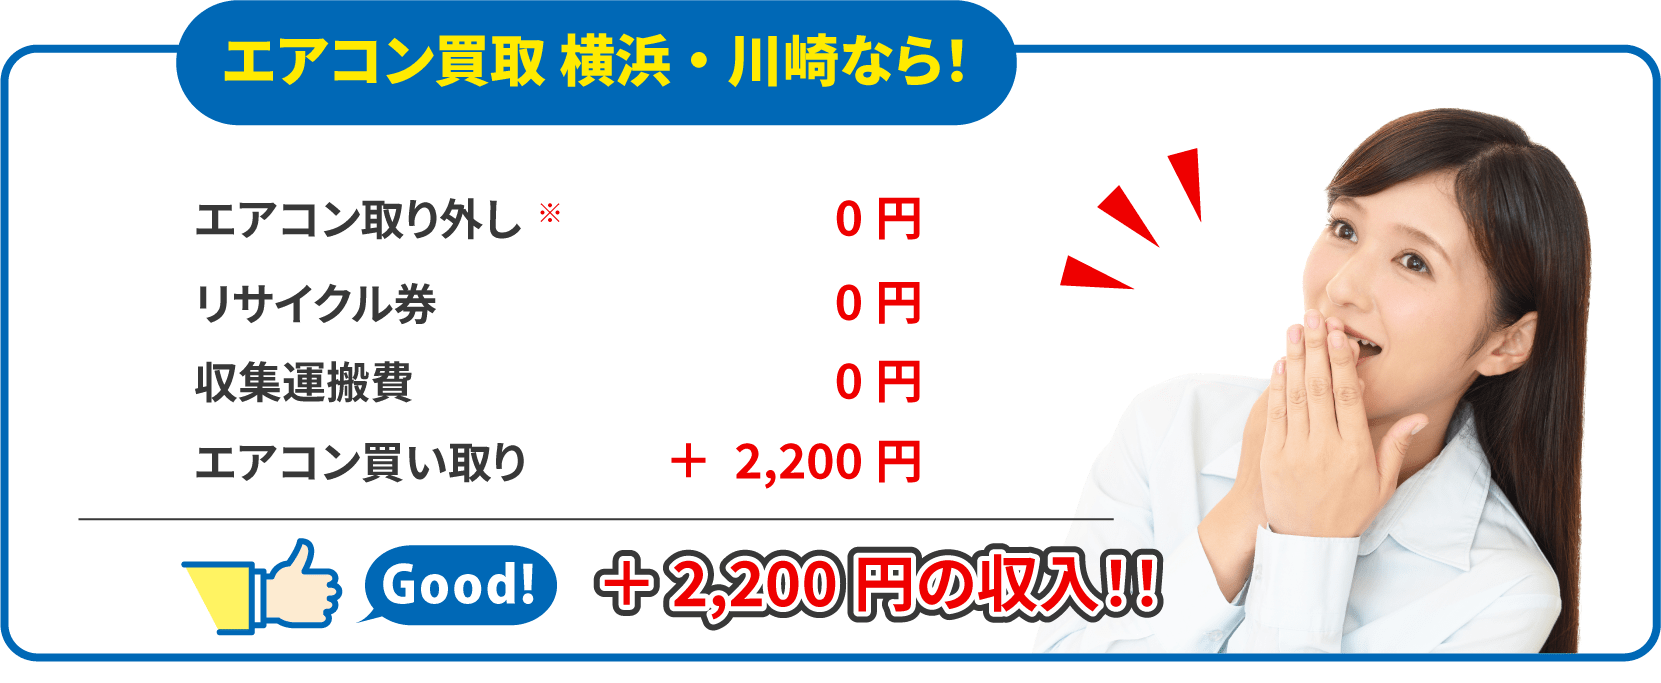 エアコン買取 横浜・川崎なら、+2,200円の収入に！